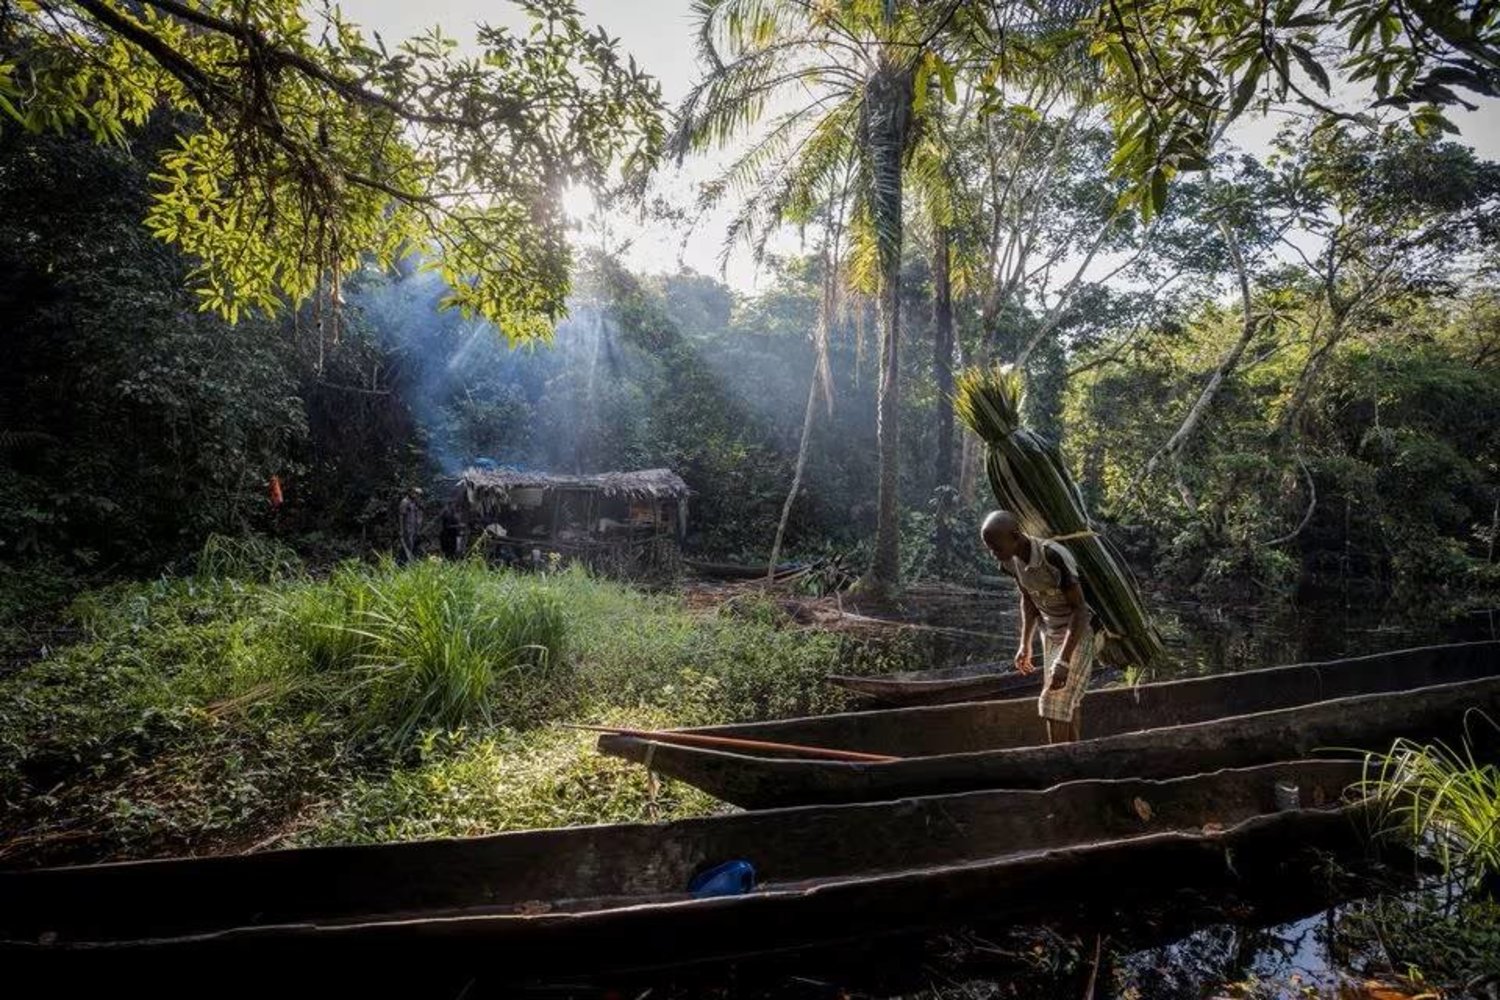 مواطن محلي يبحر على مركب صغير بأحد الأنهار داخل غابة كثيفة في جمهورية الكونغو الديمقراطية (رويترز)